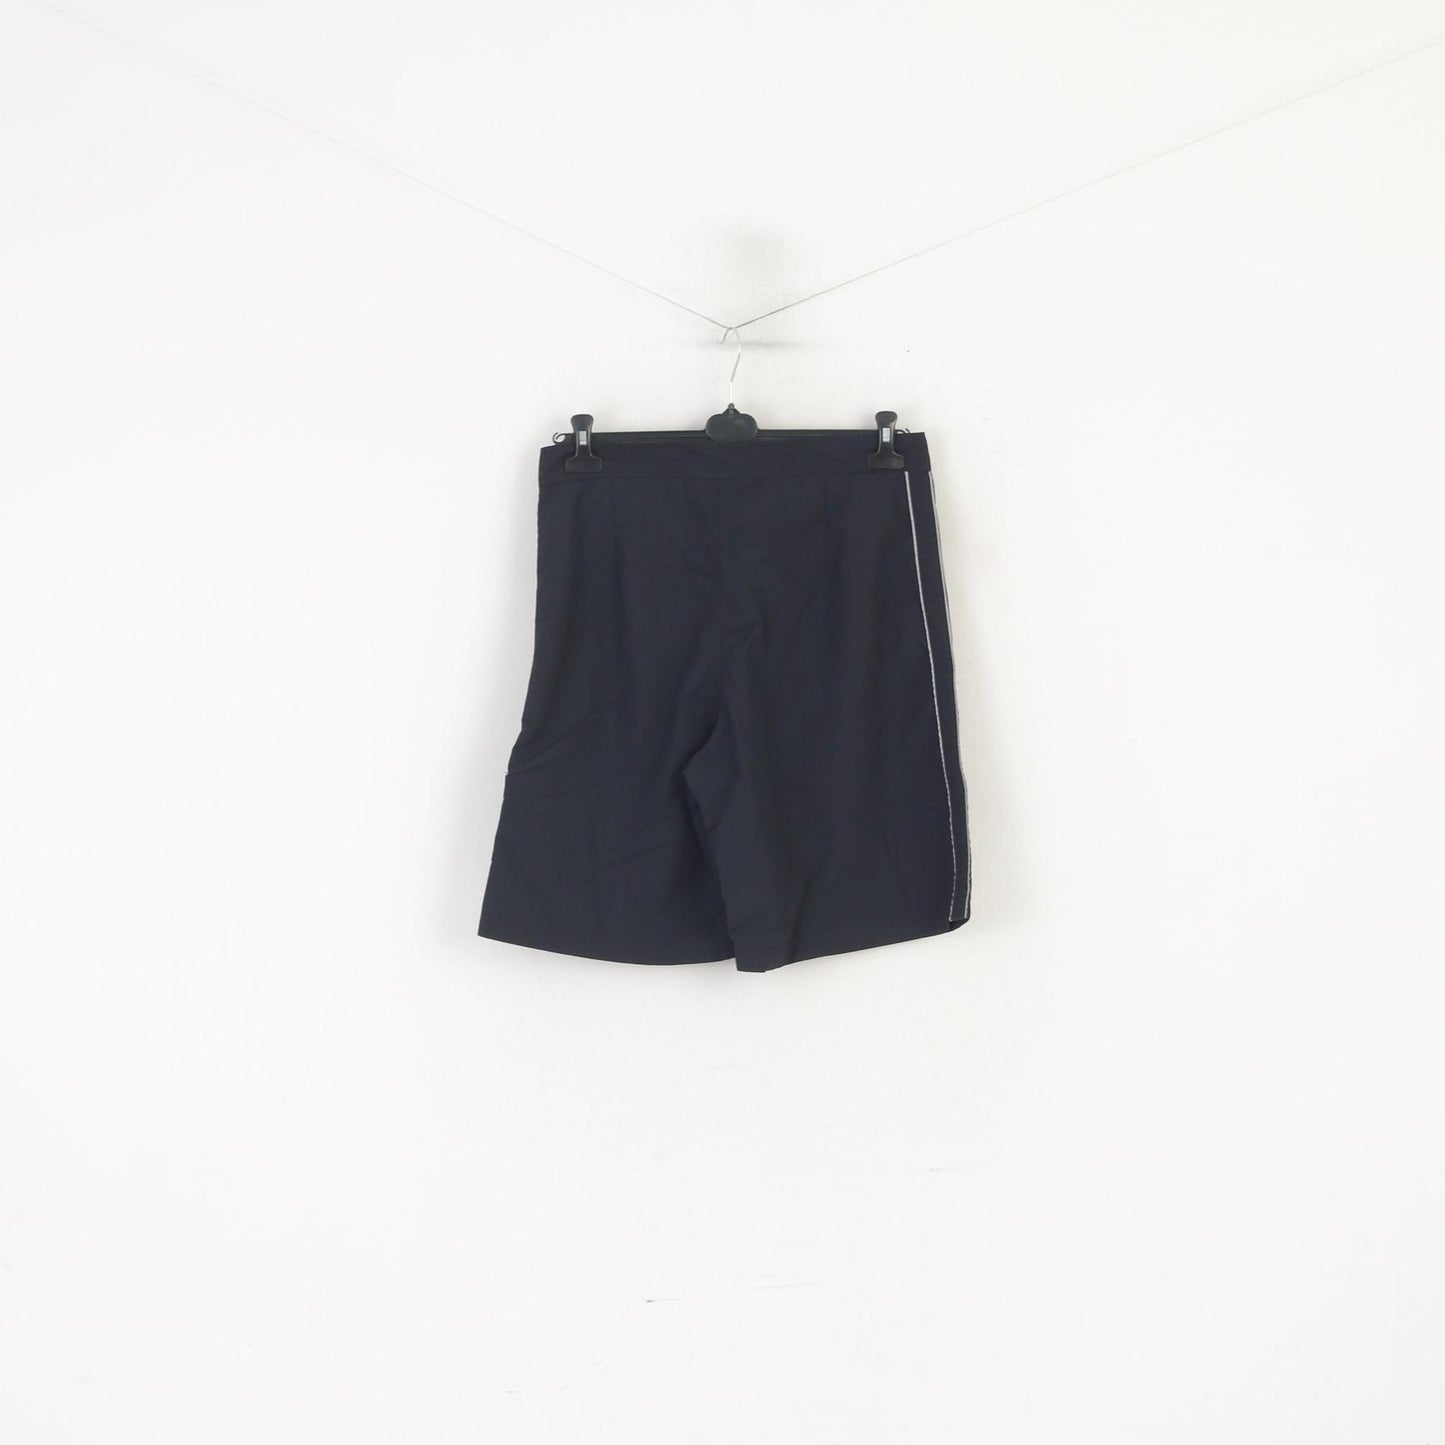 Chiemsee Uomo 32 M Pantaloncini Bermuda estivi da spiaggia impermeabili in nylon nero